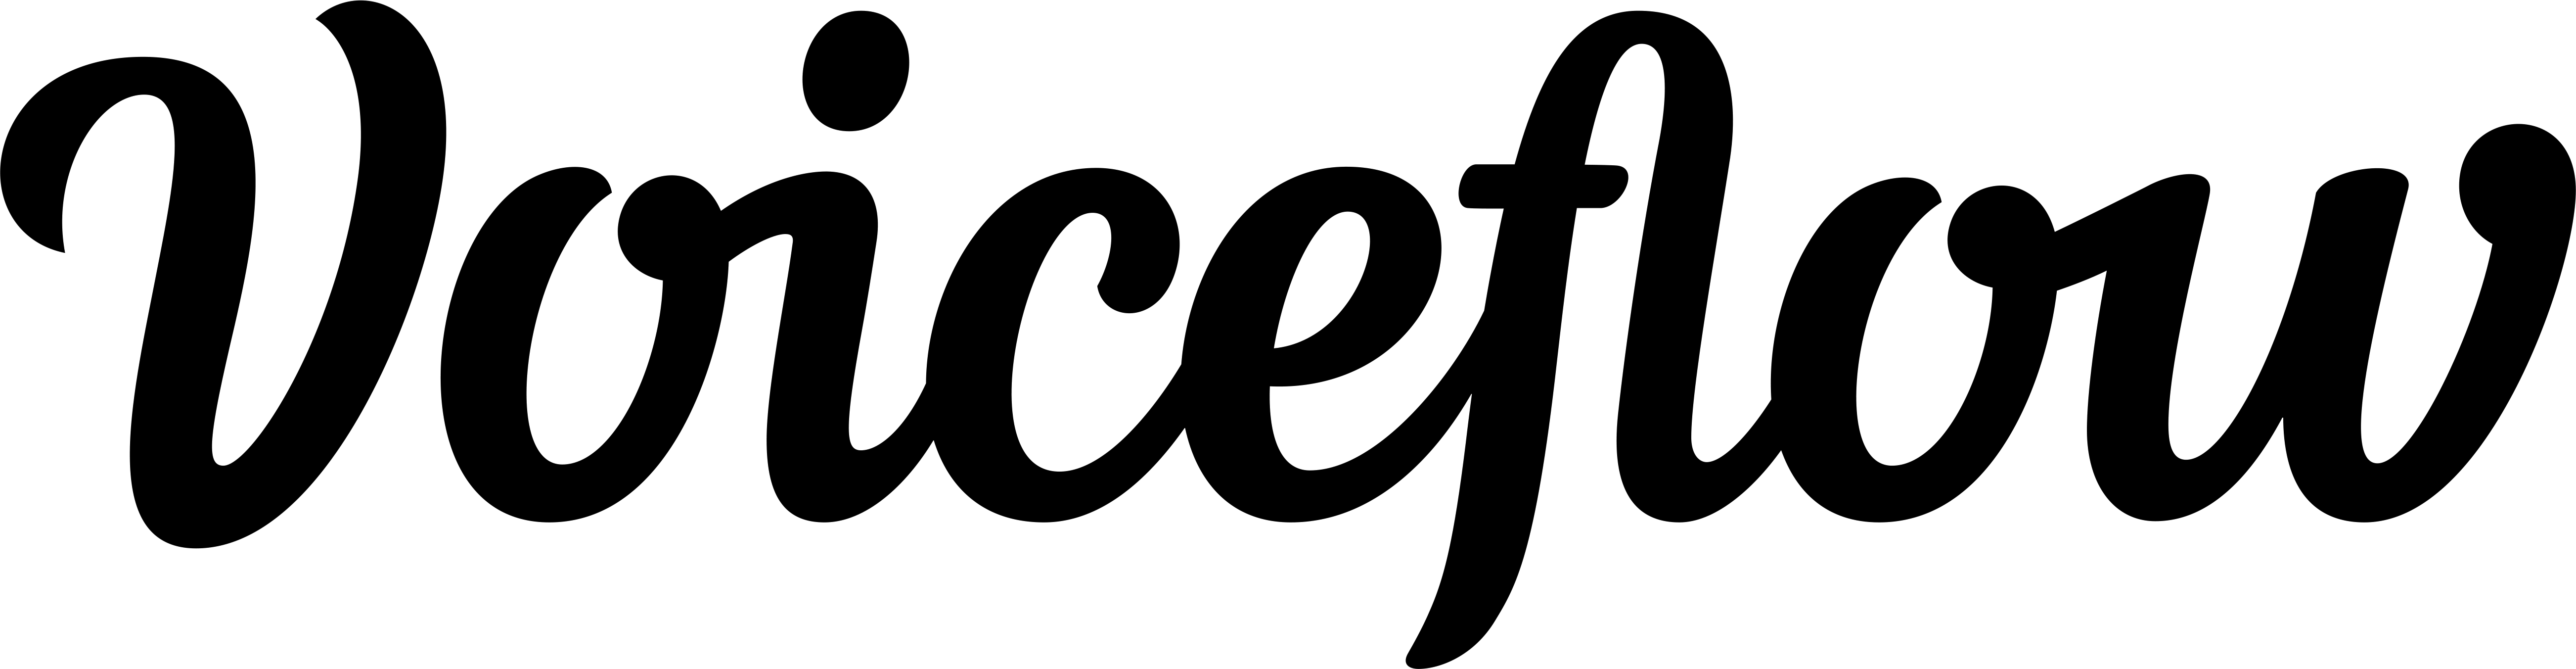 Voiceflow Black logo